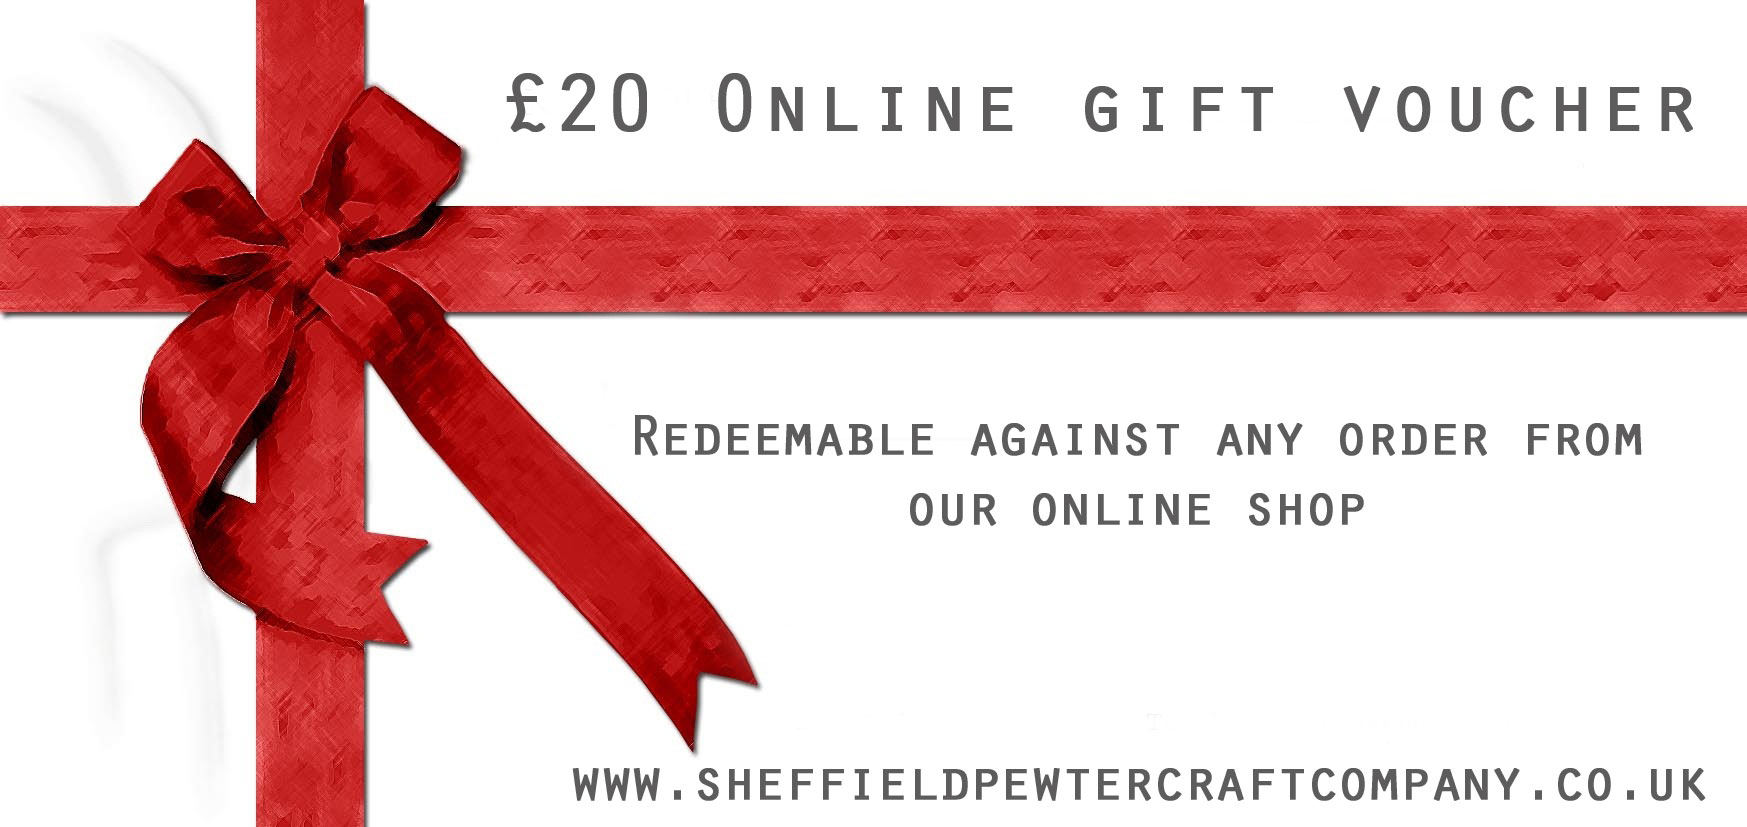 £20 Online Gift Voucher